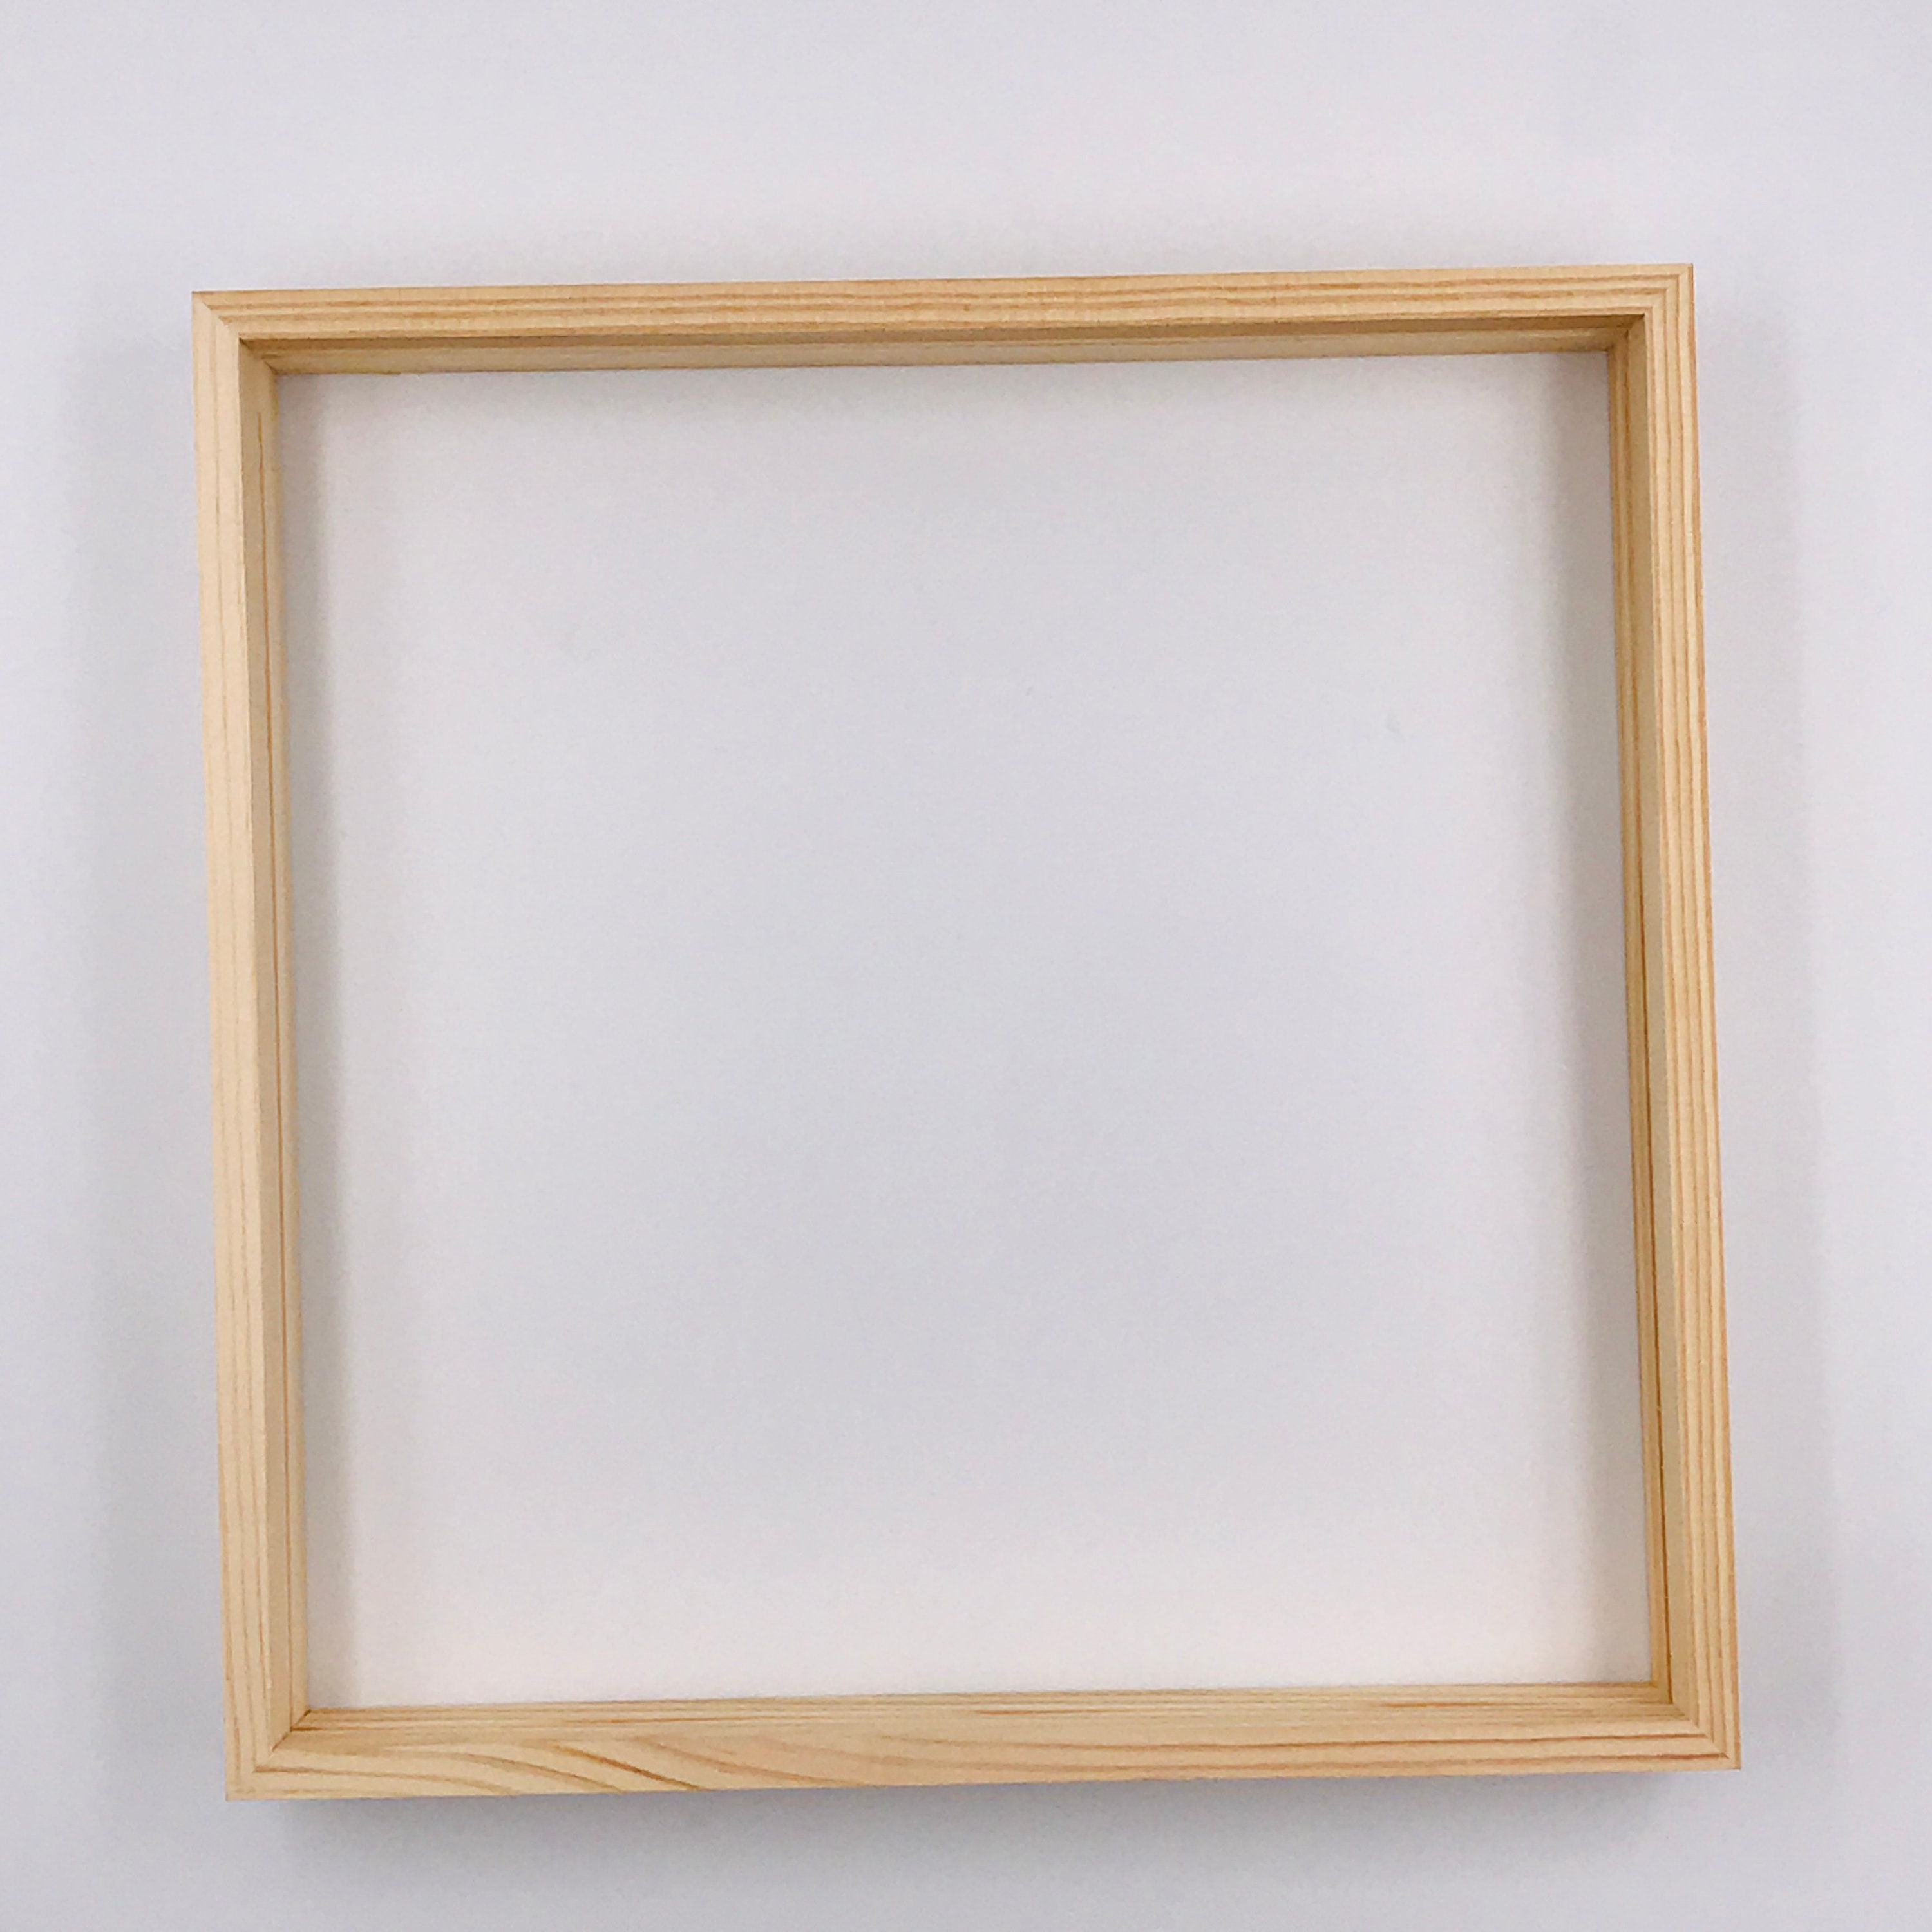 Plain wood grain pressed flower frame handmade photo frame | Etsy